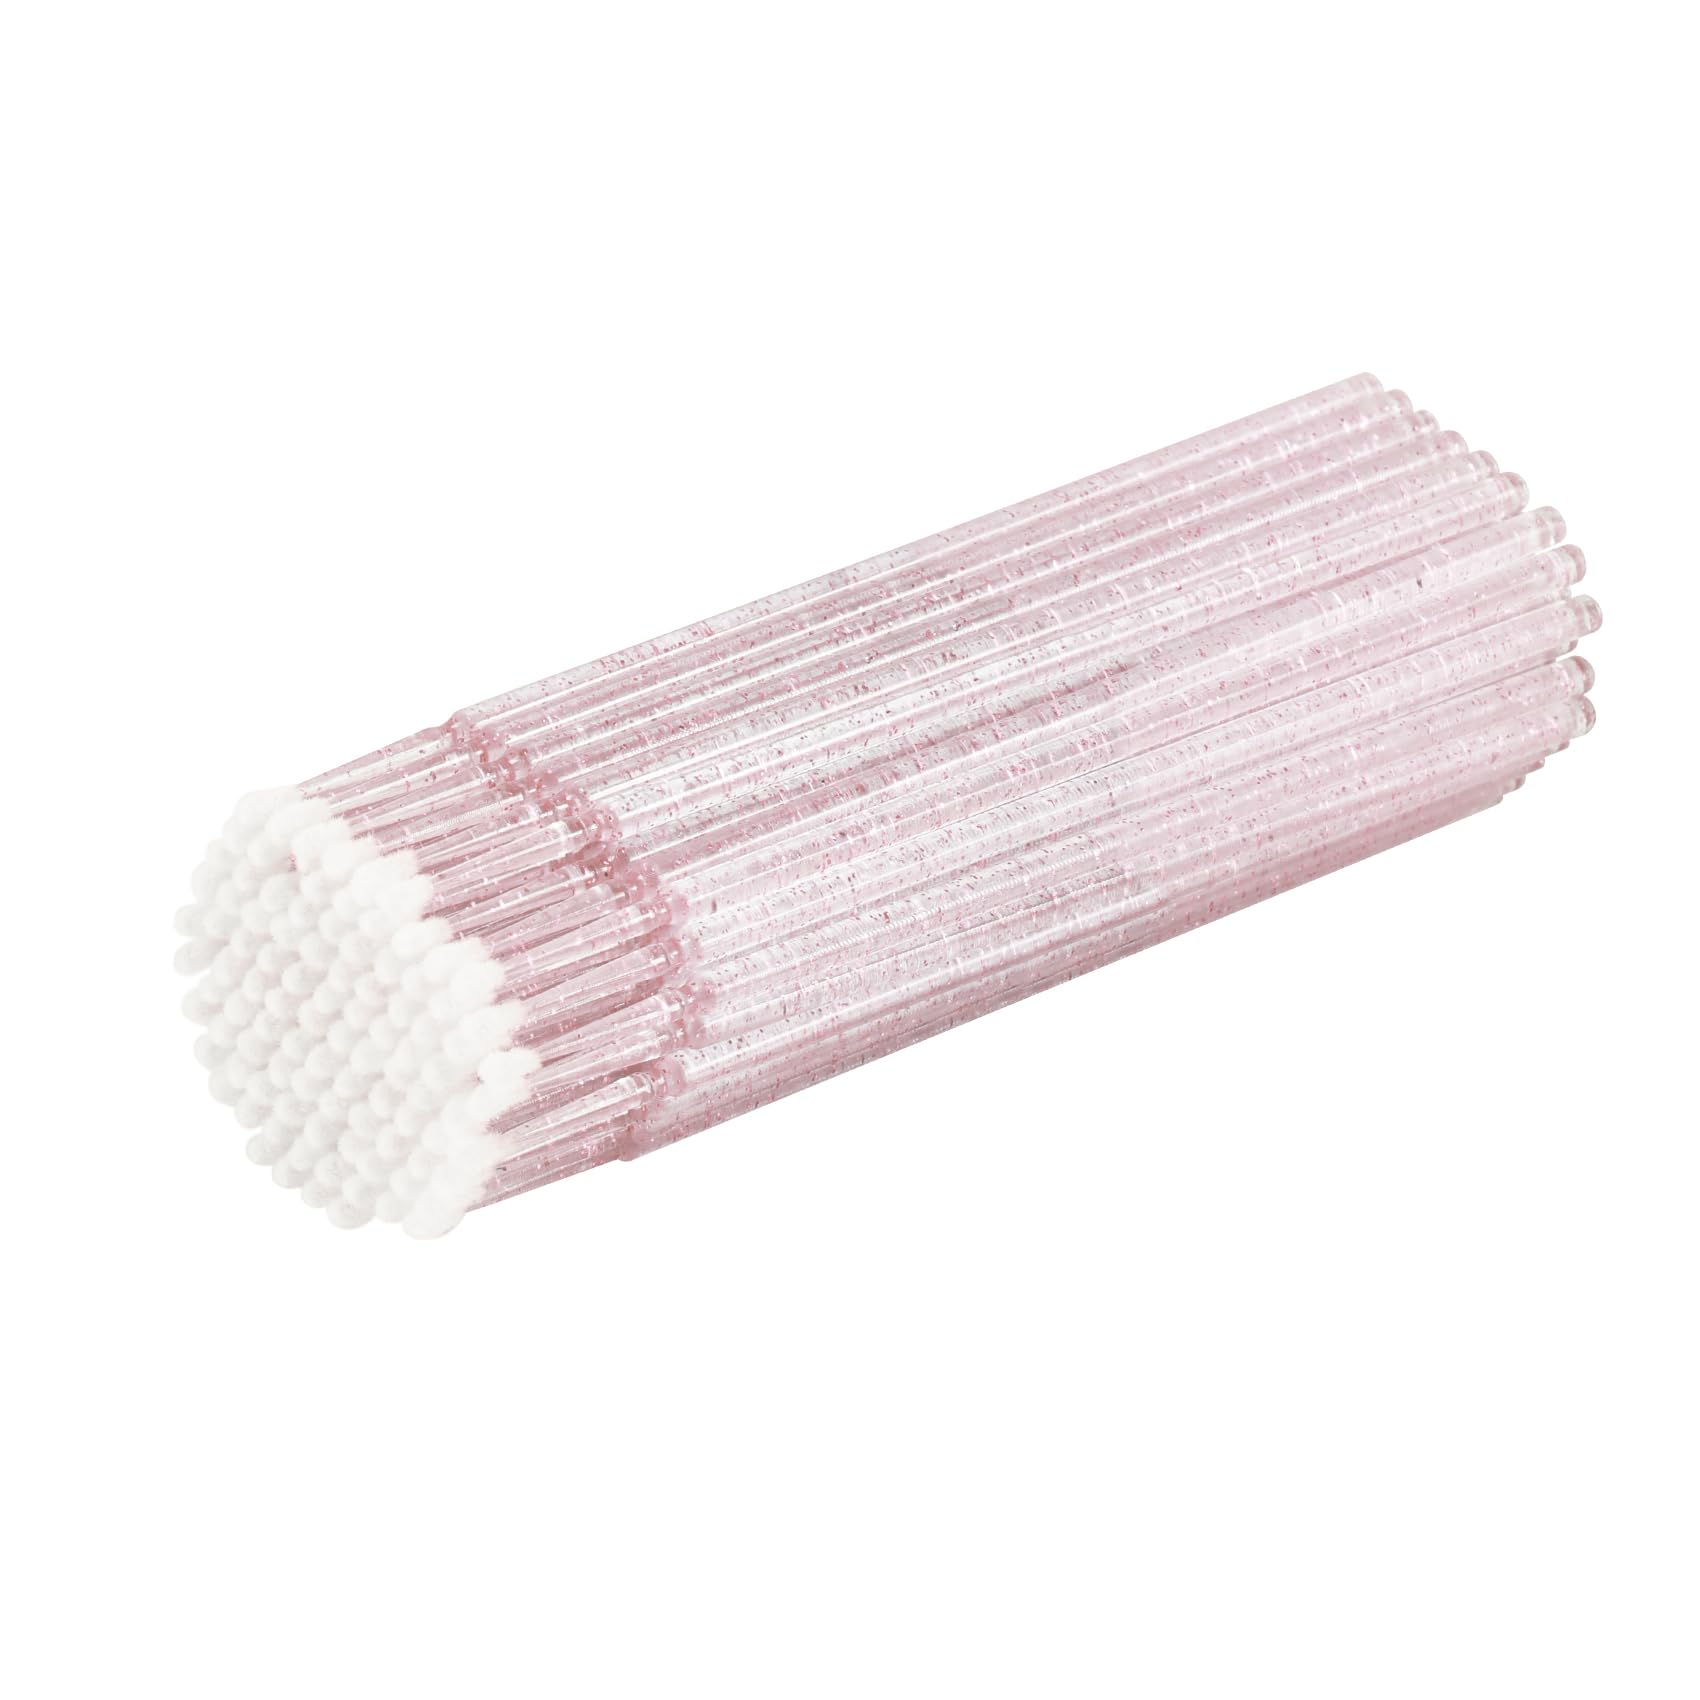 Annhua マイクロ綿棒 使い捨て マイクロブラシ マイクロスティック アプリケーター 綿棒 まつげマイクロブラシ マツ…